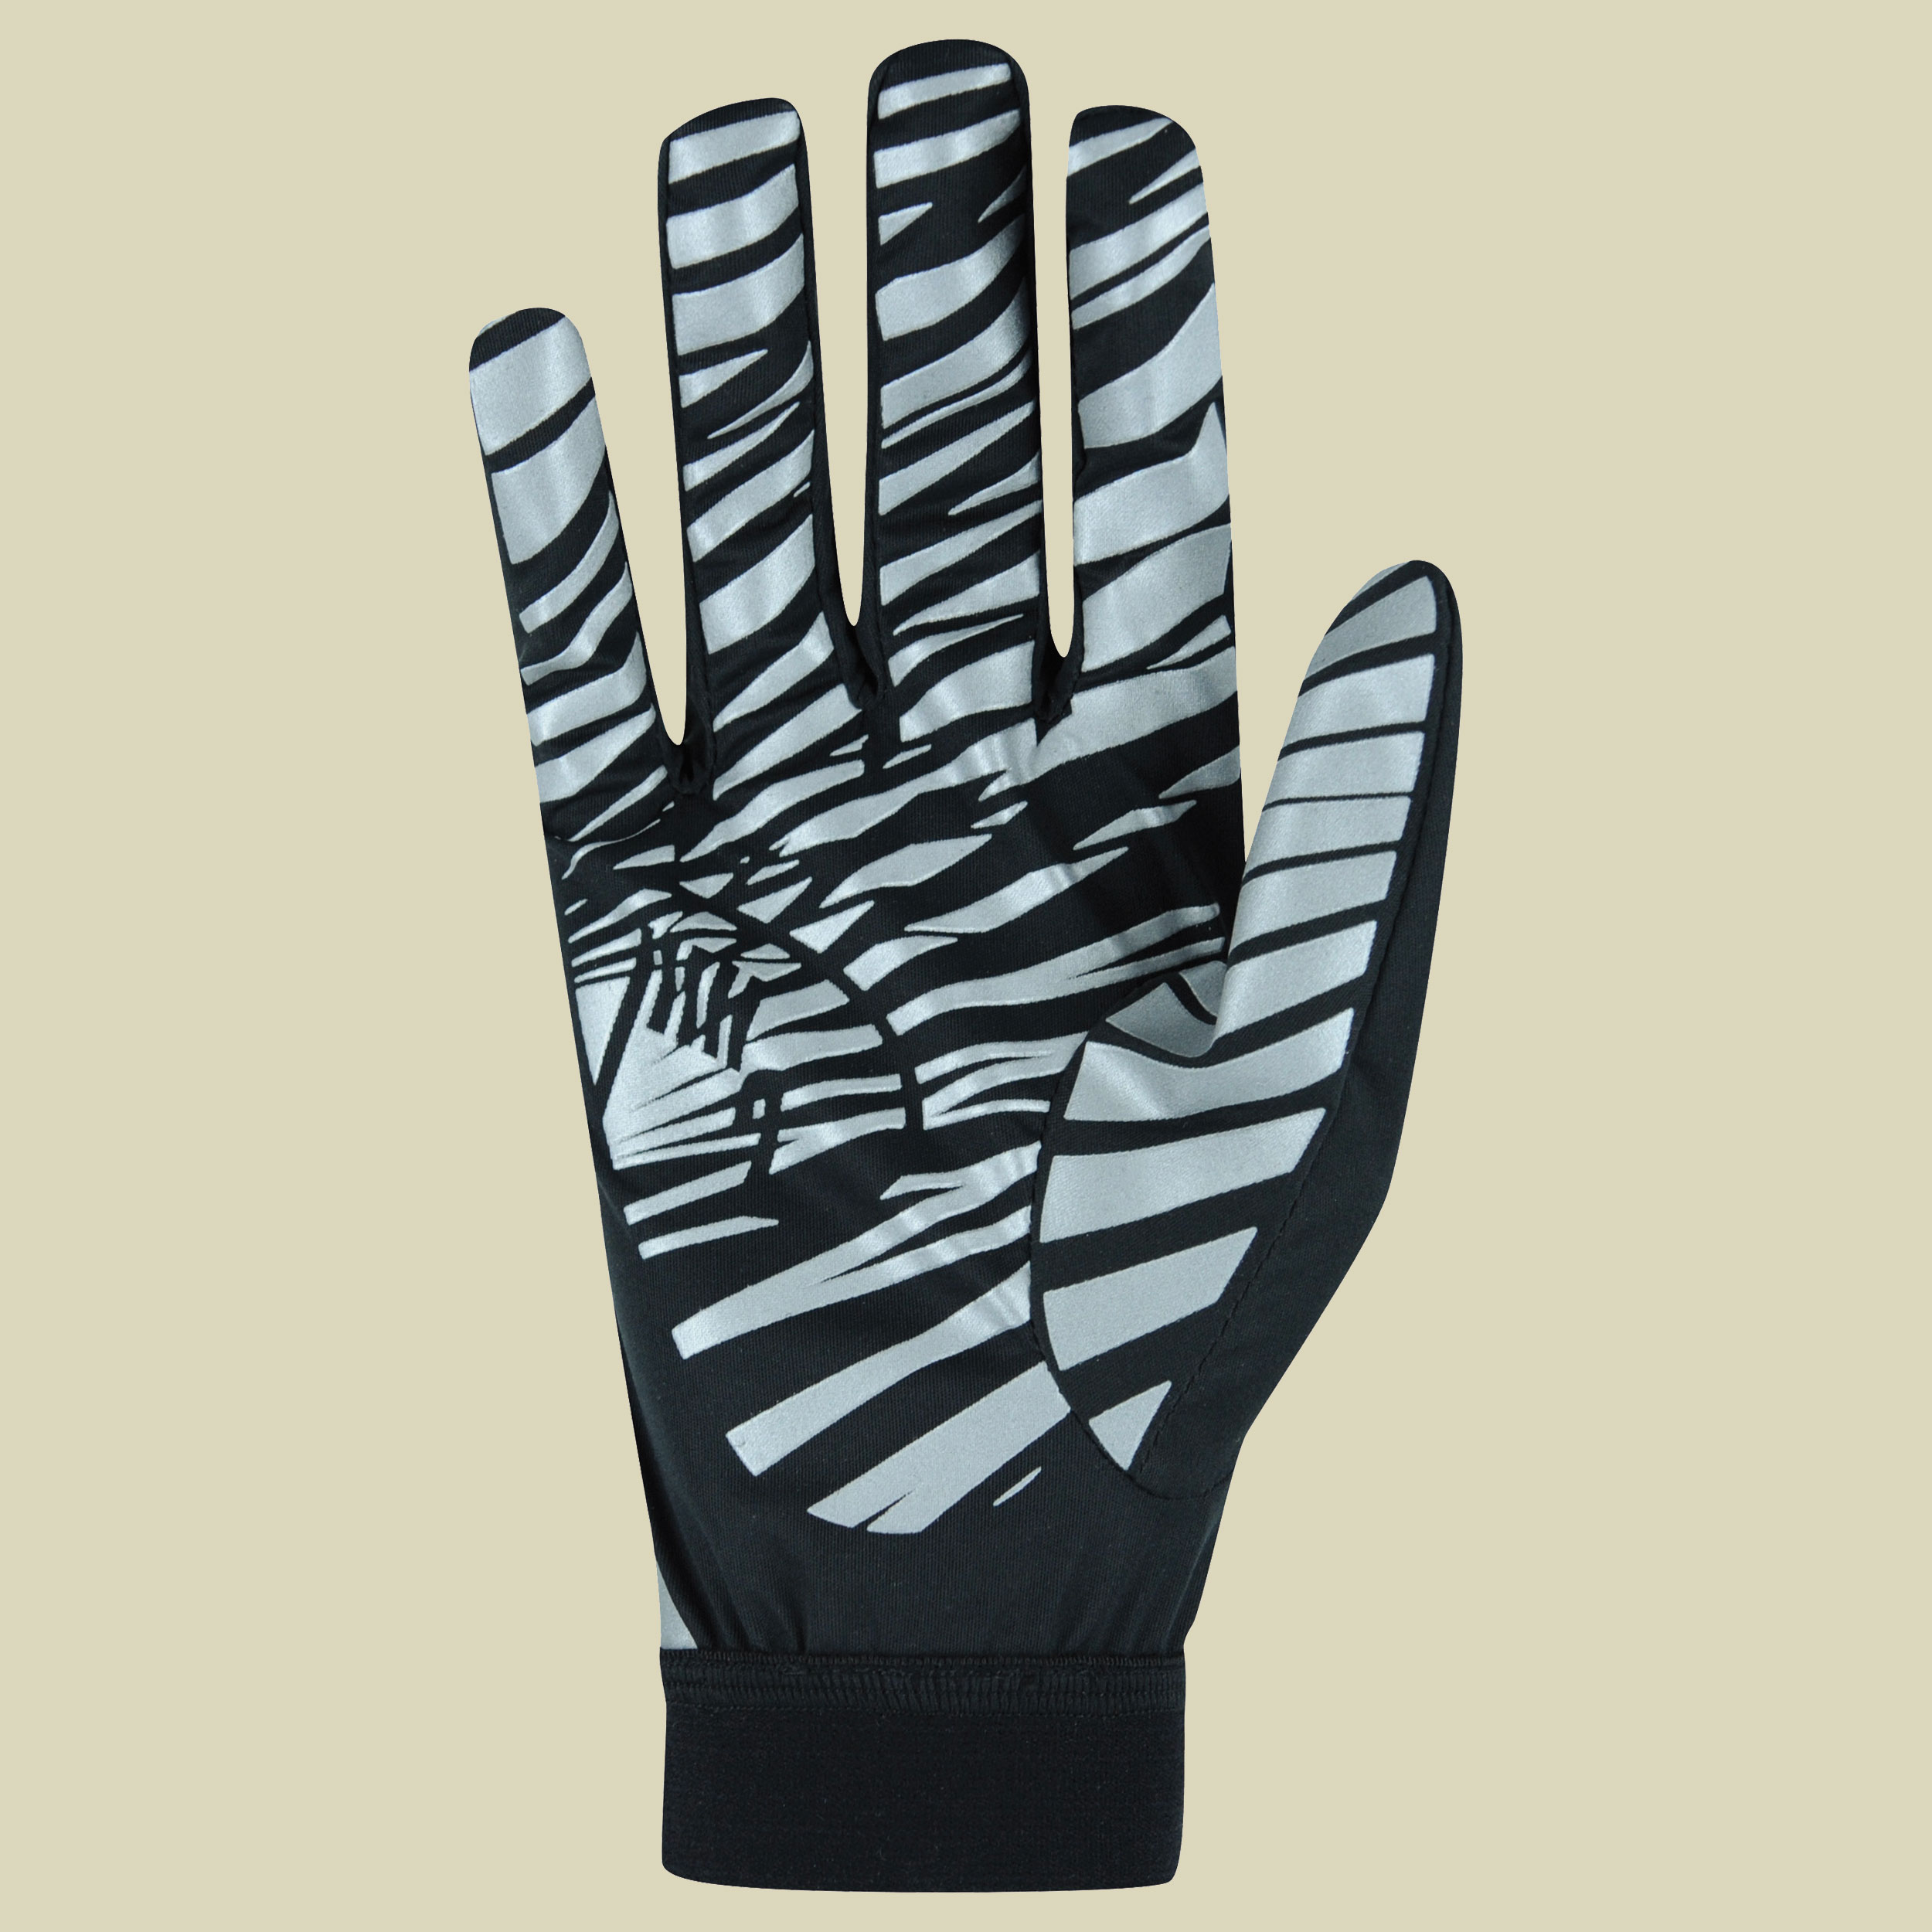 Monte Cover Glove Größe 9,5 Farbe schwarz